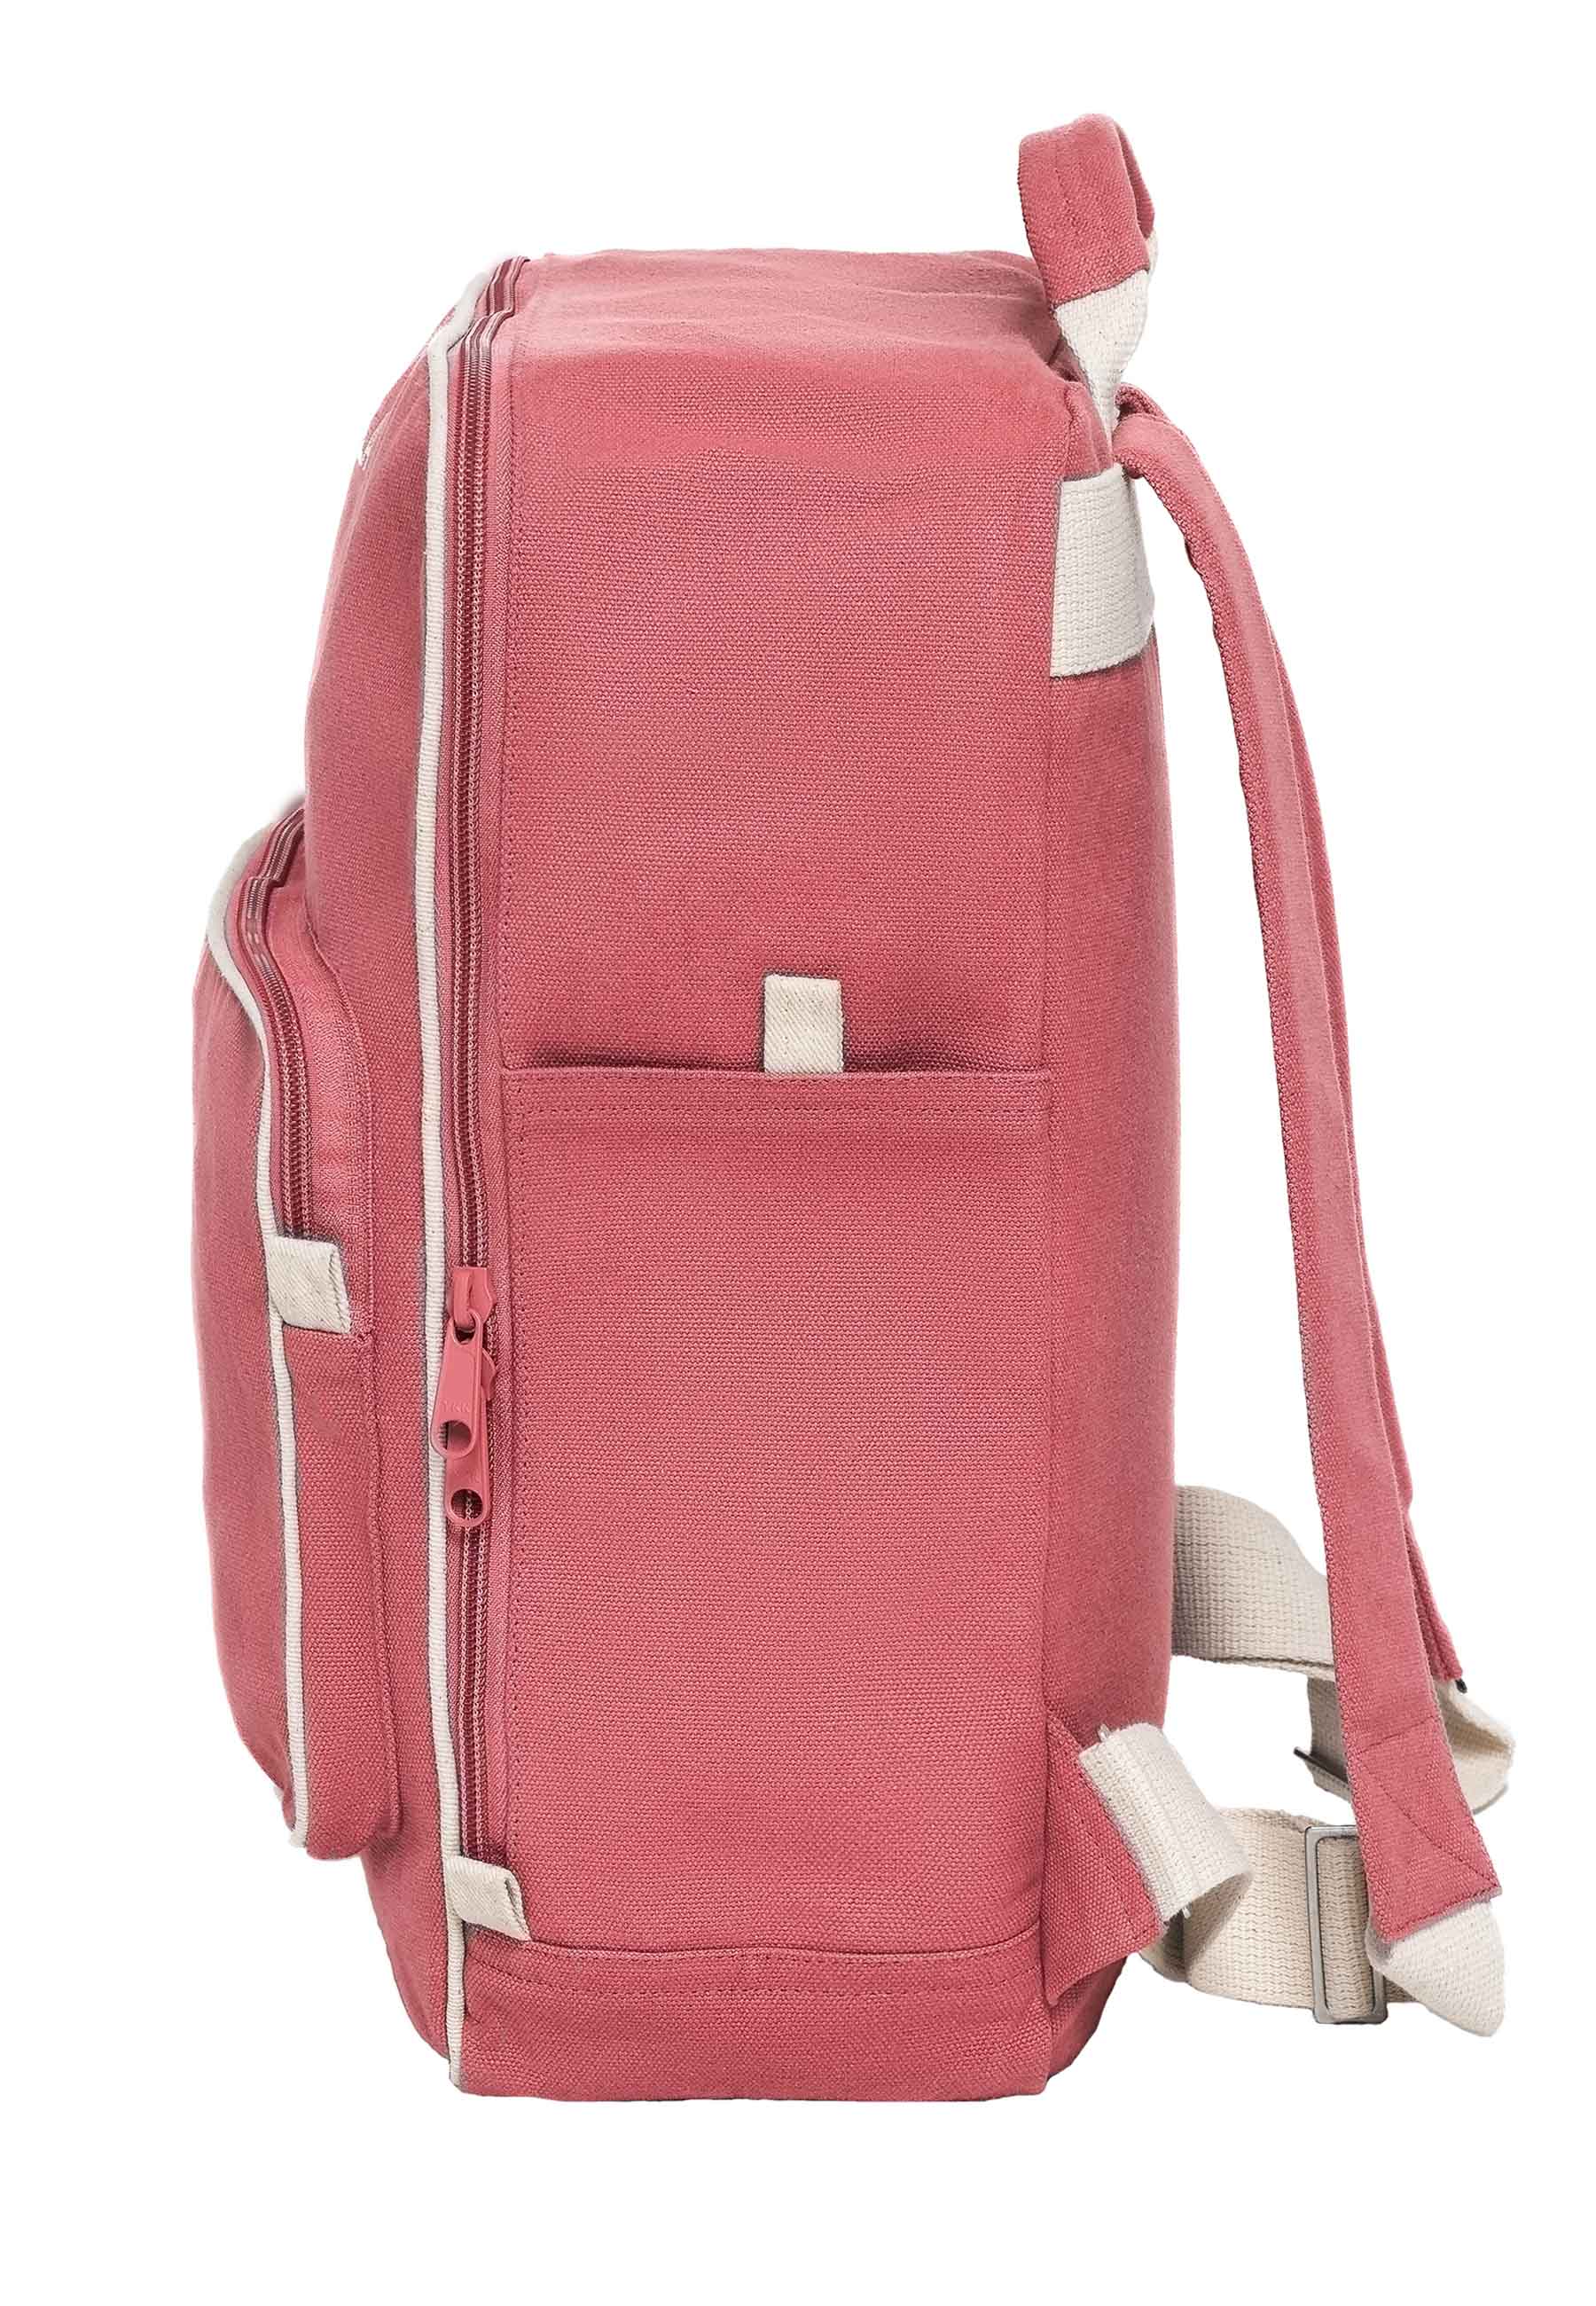 Melawear - MELA II hátizsák - Rózsaszín